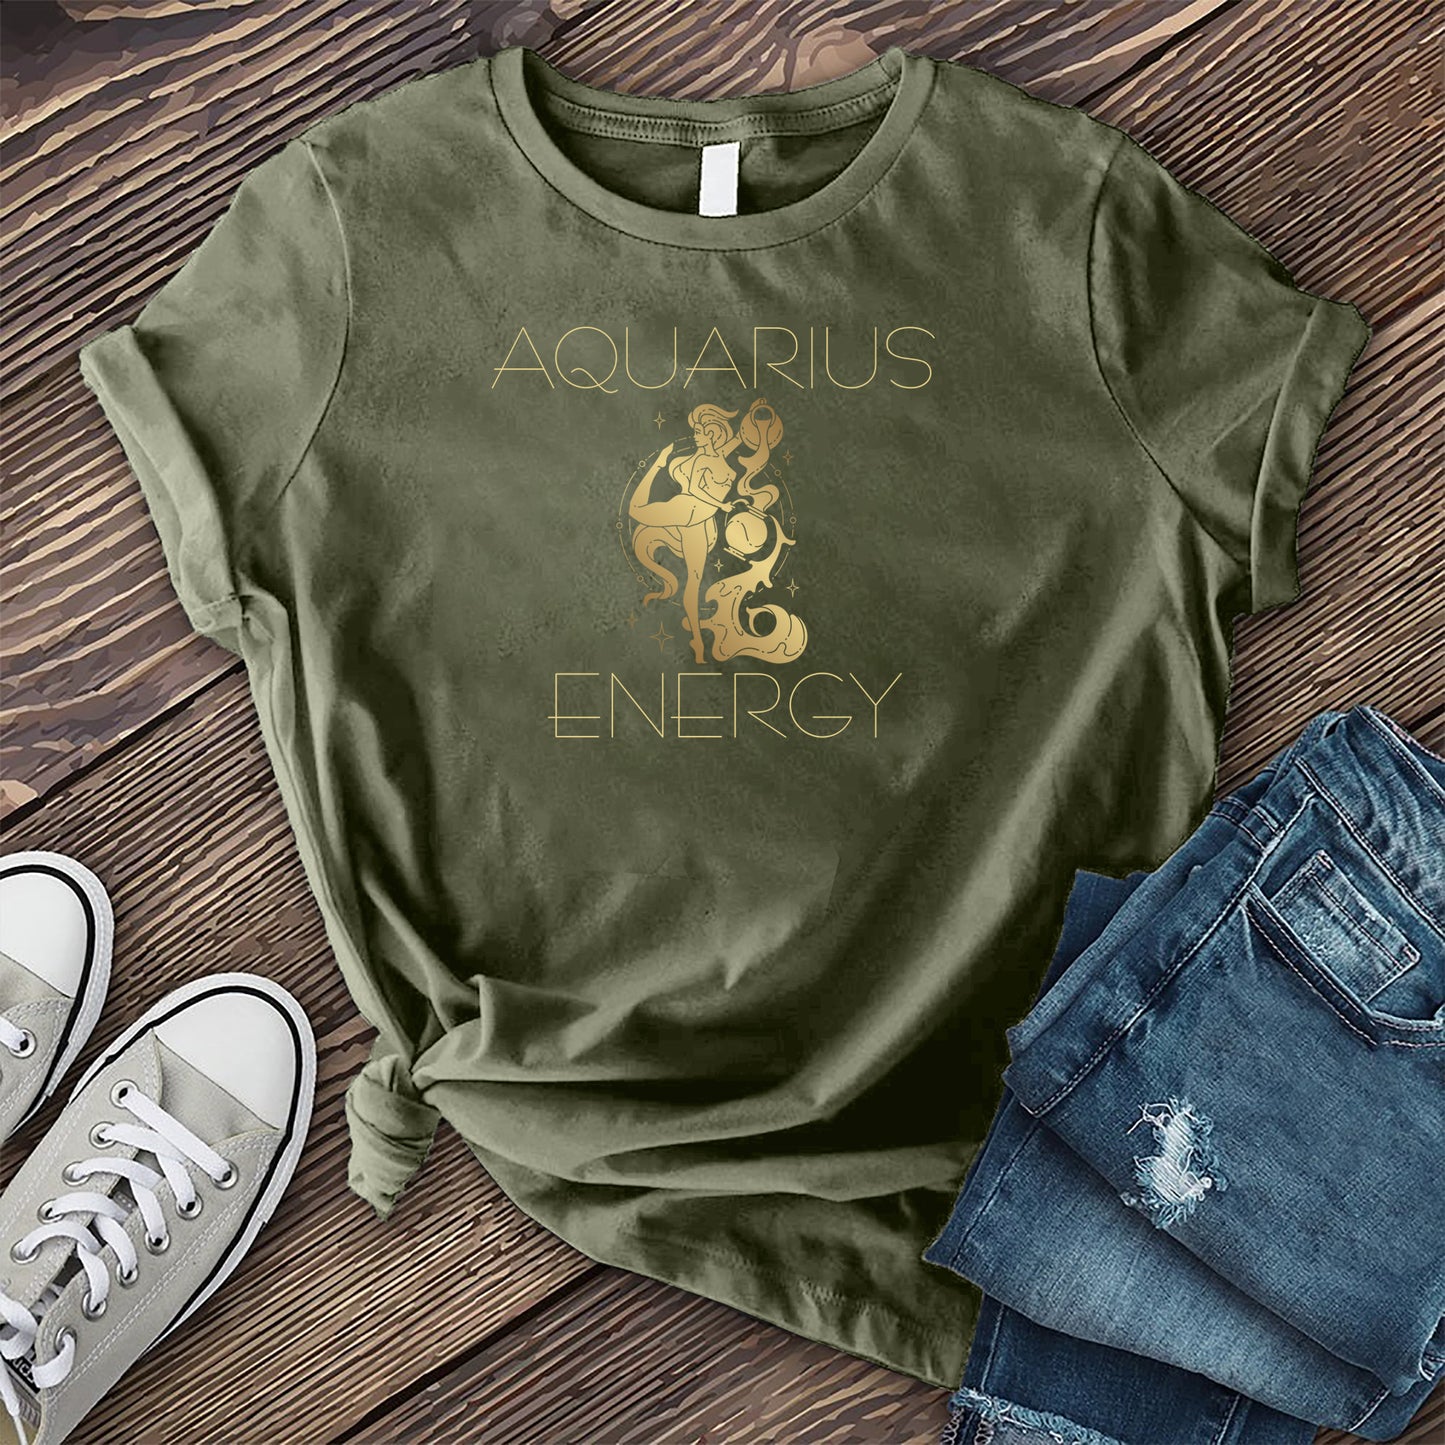 Aquarius Energy T-shirt